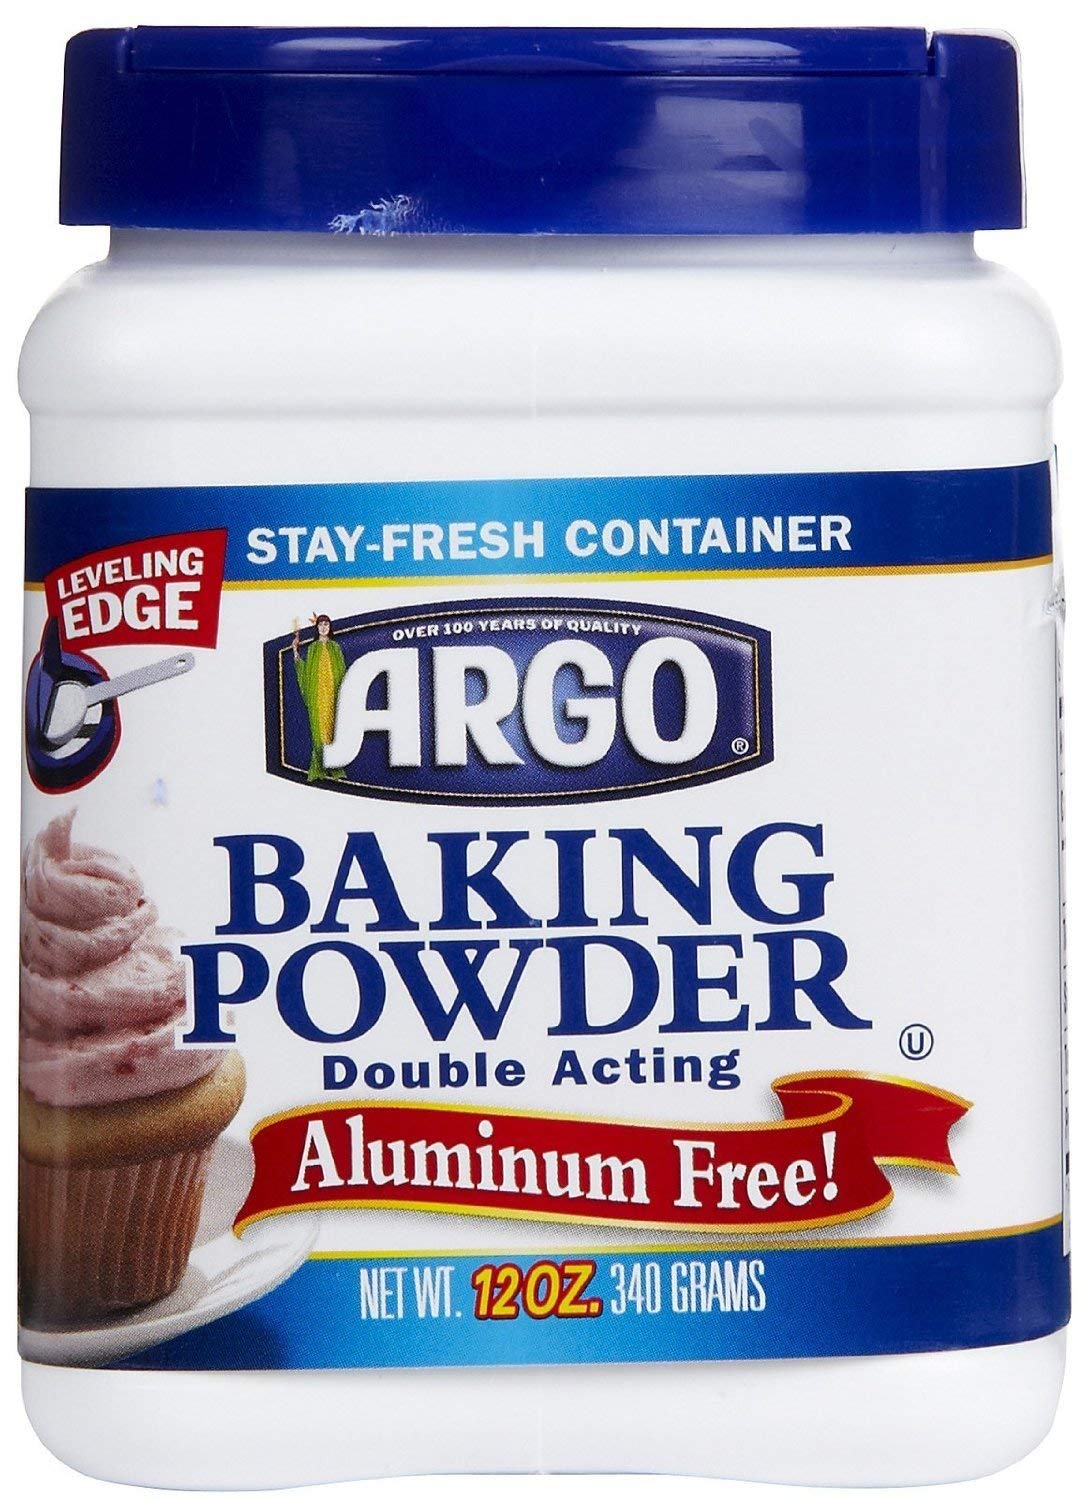 Argo Double Acting Aluminum Free Baking Powder